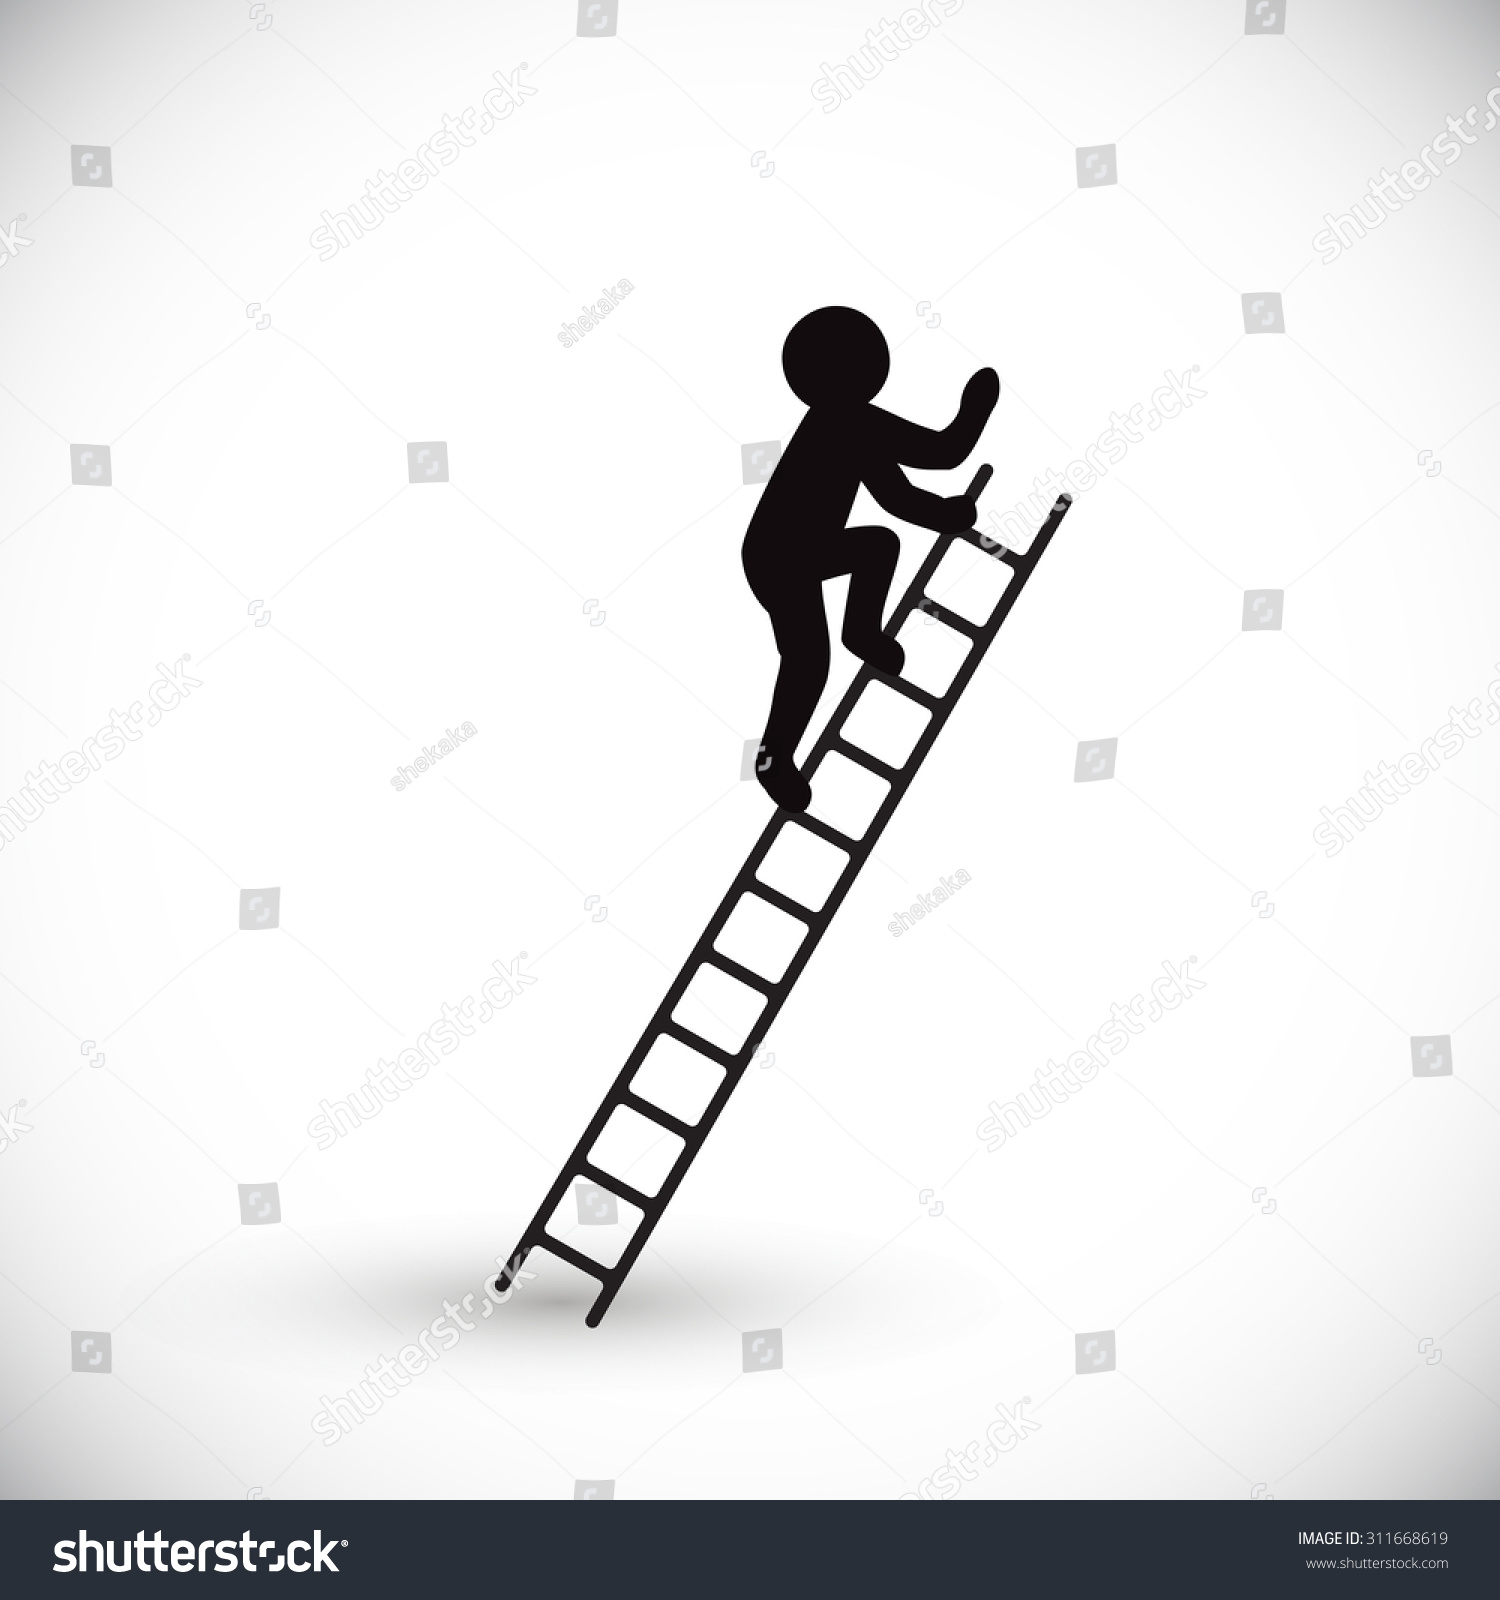 clipart man climbing ladder - photo #32